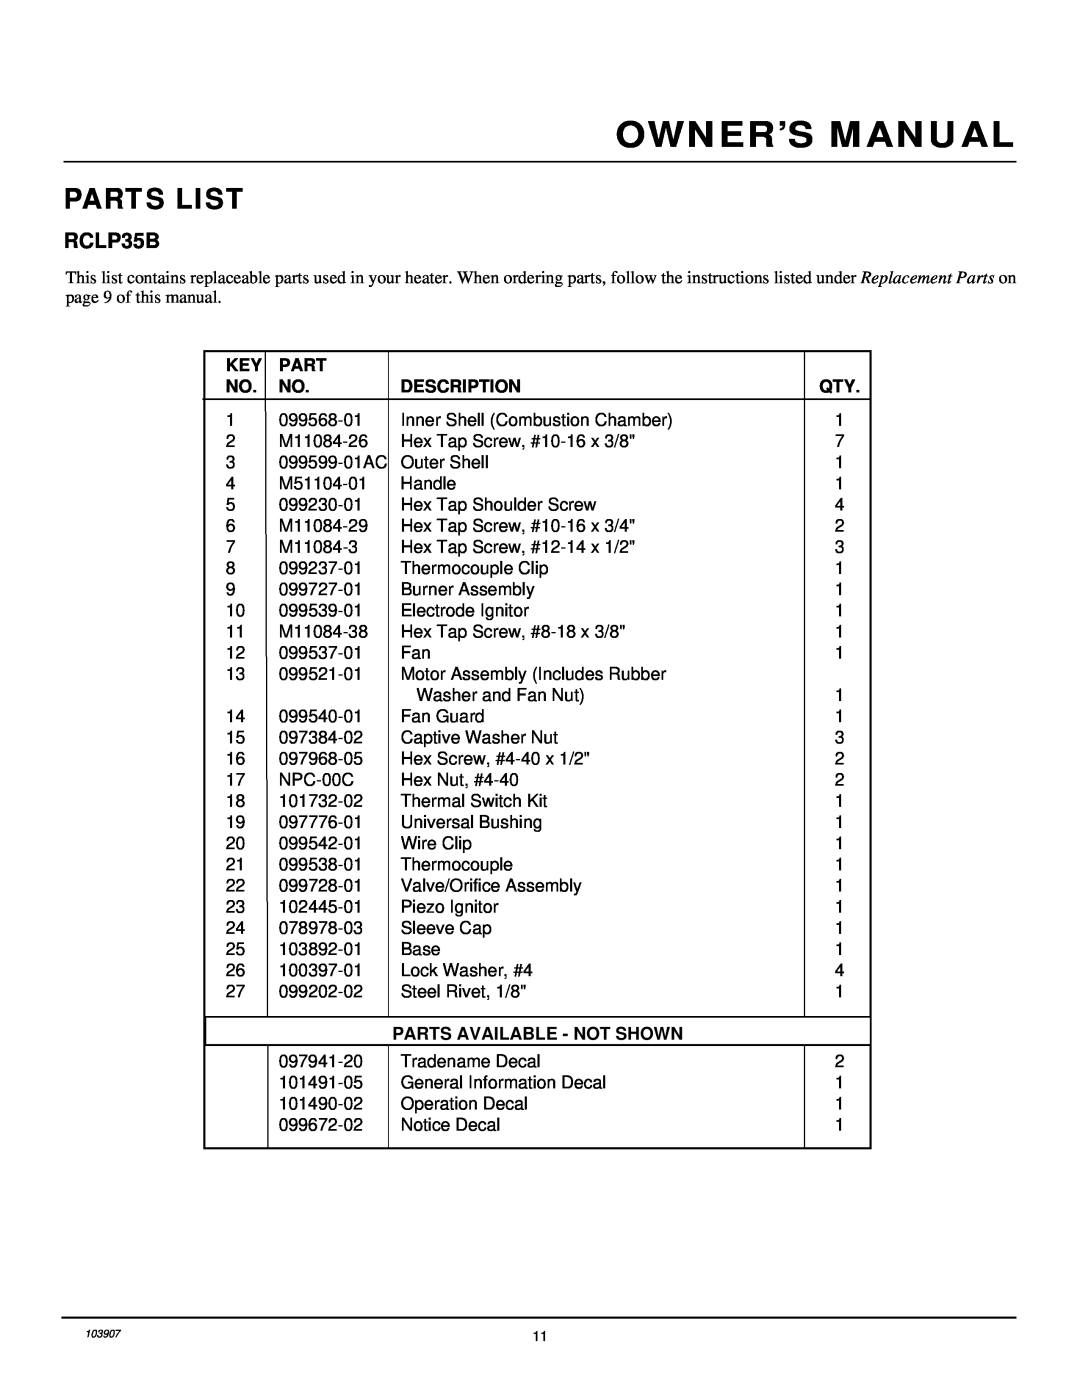 Desa RCLP35B owner manual Parts List 